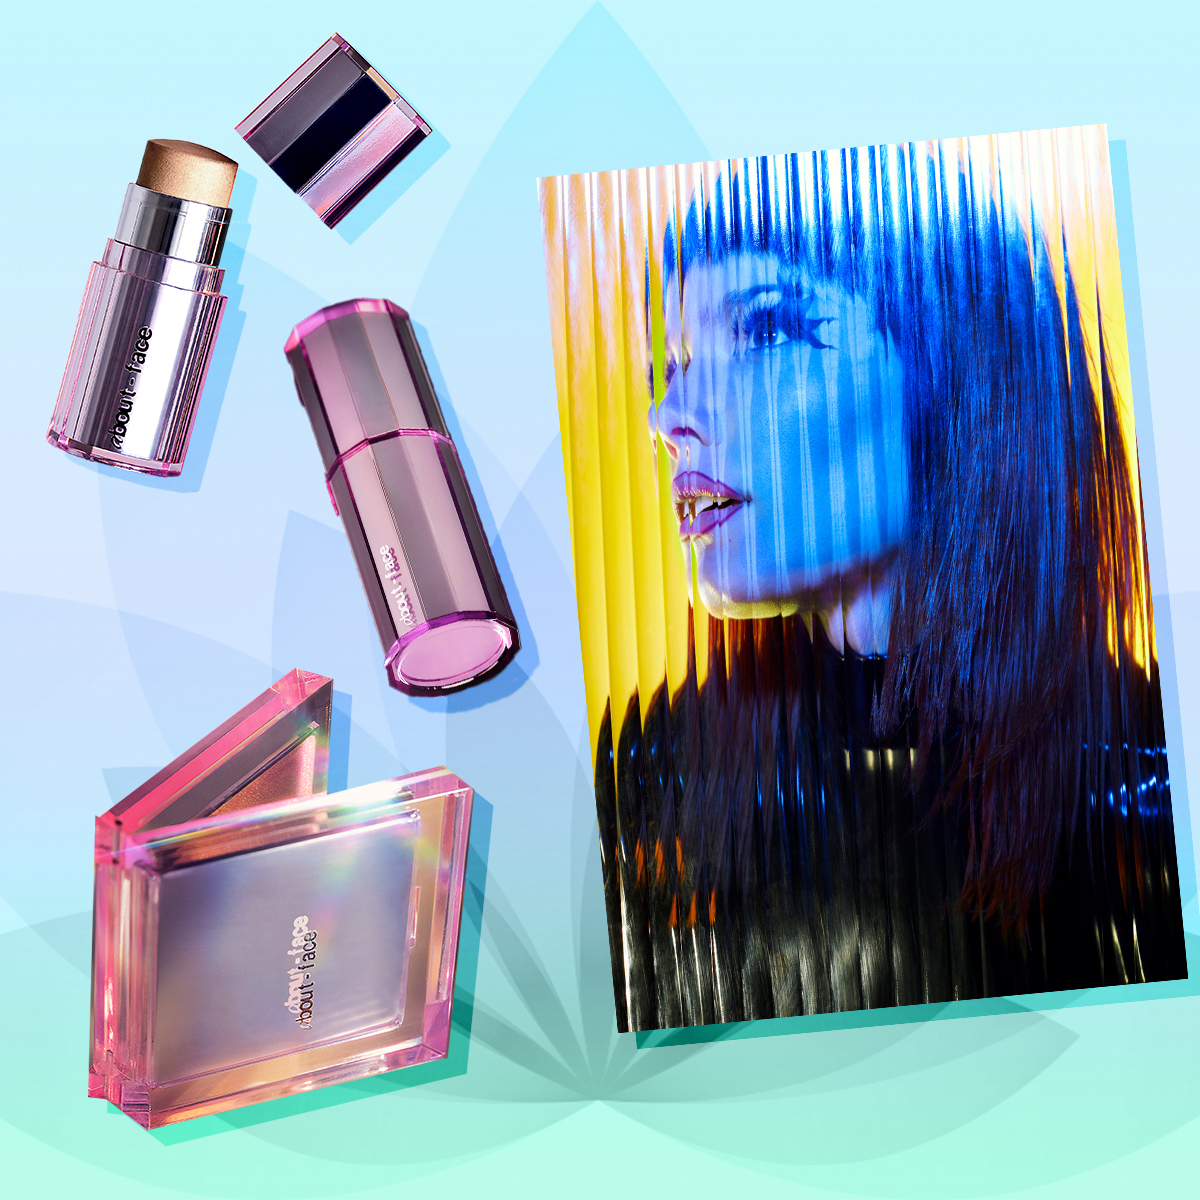 Halsey Reveals Makeup Brand 'About-Face' – Centennial World: Internet  Culture, Creators & News